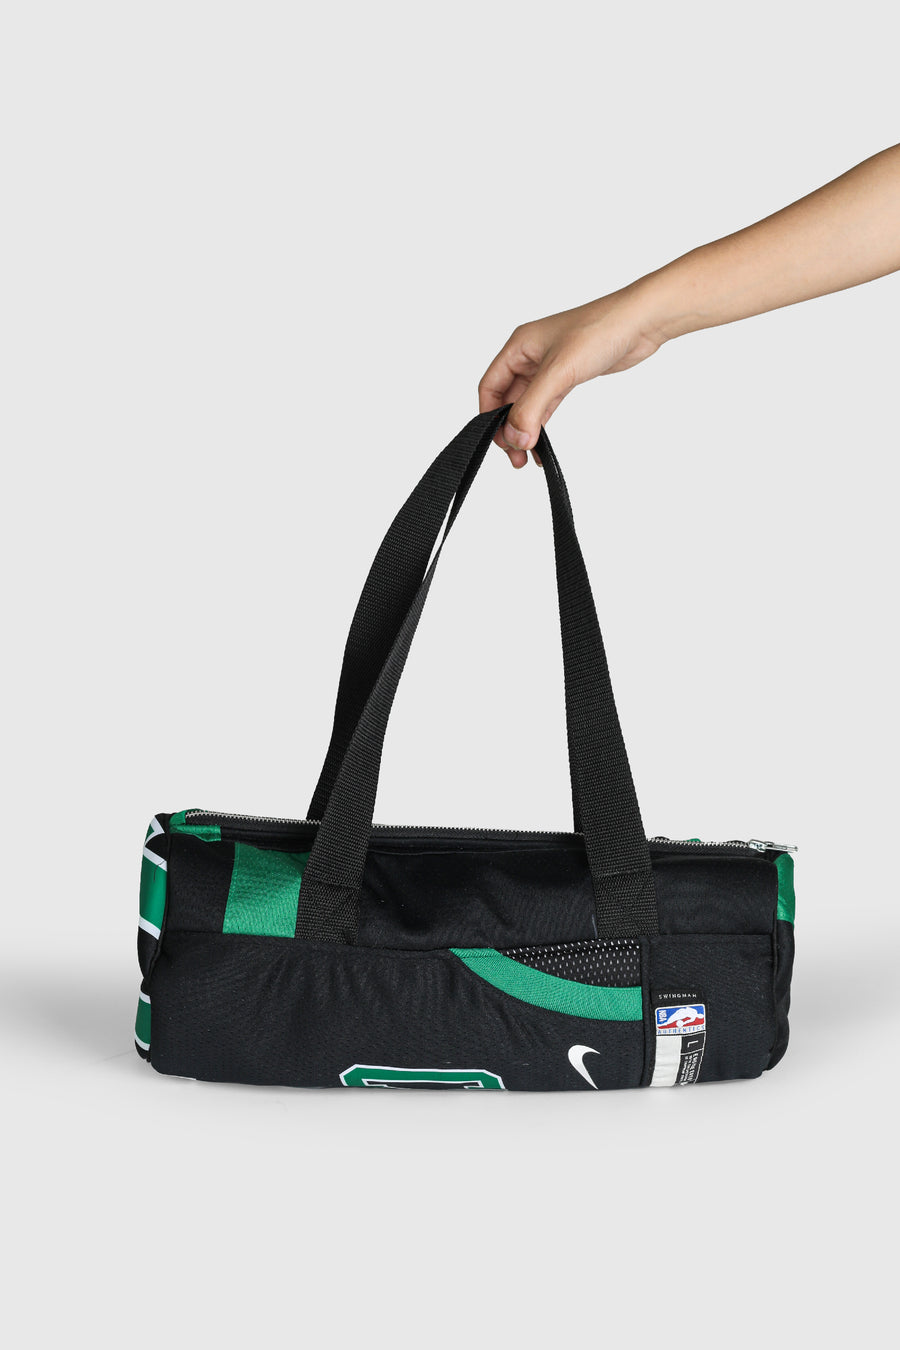 Rework Celtics NBA Duffle Bag